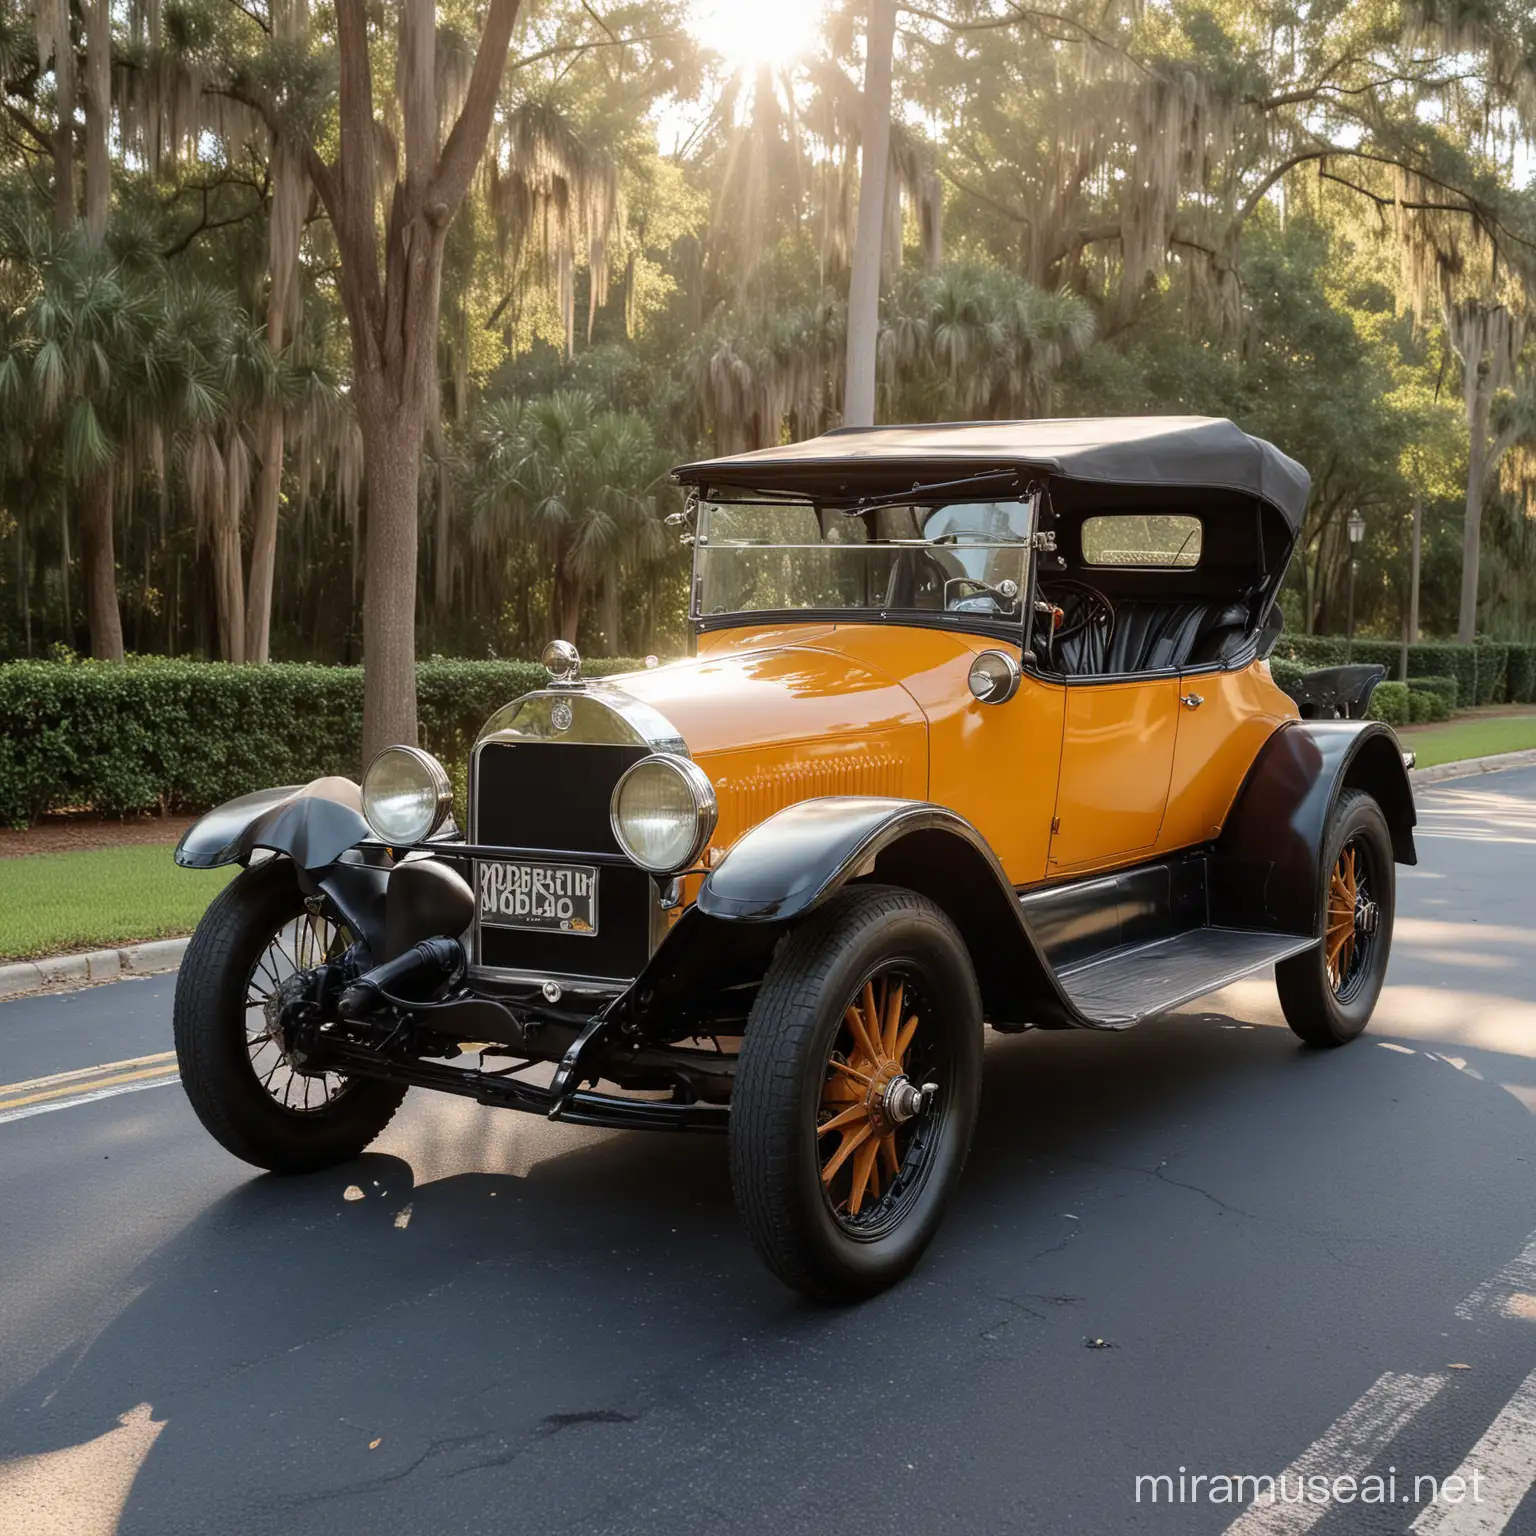 Auto Nasville 1919, Clásico, color ambar mate, estacionado en una calle de Tallahassee Florida, a las 8 de la mañana, es un día soleado hermoso cuando las luces del sol inciden en este coche emblematico.